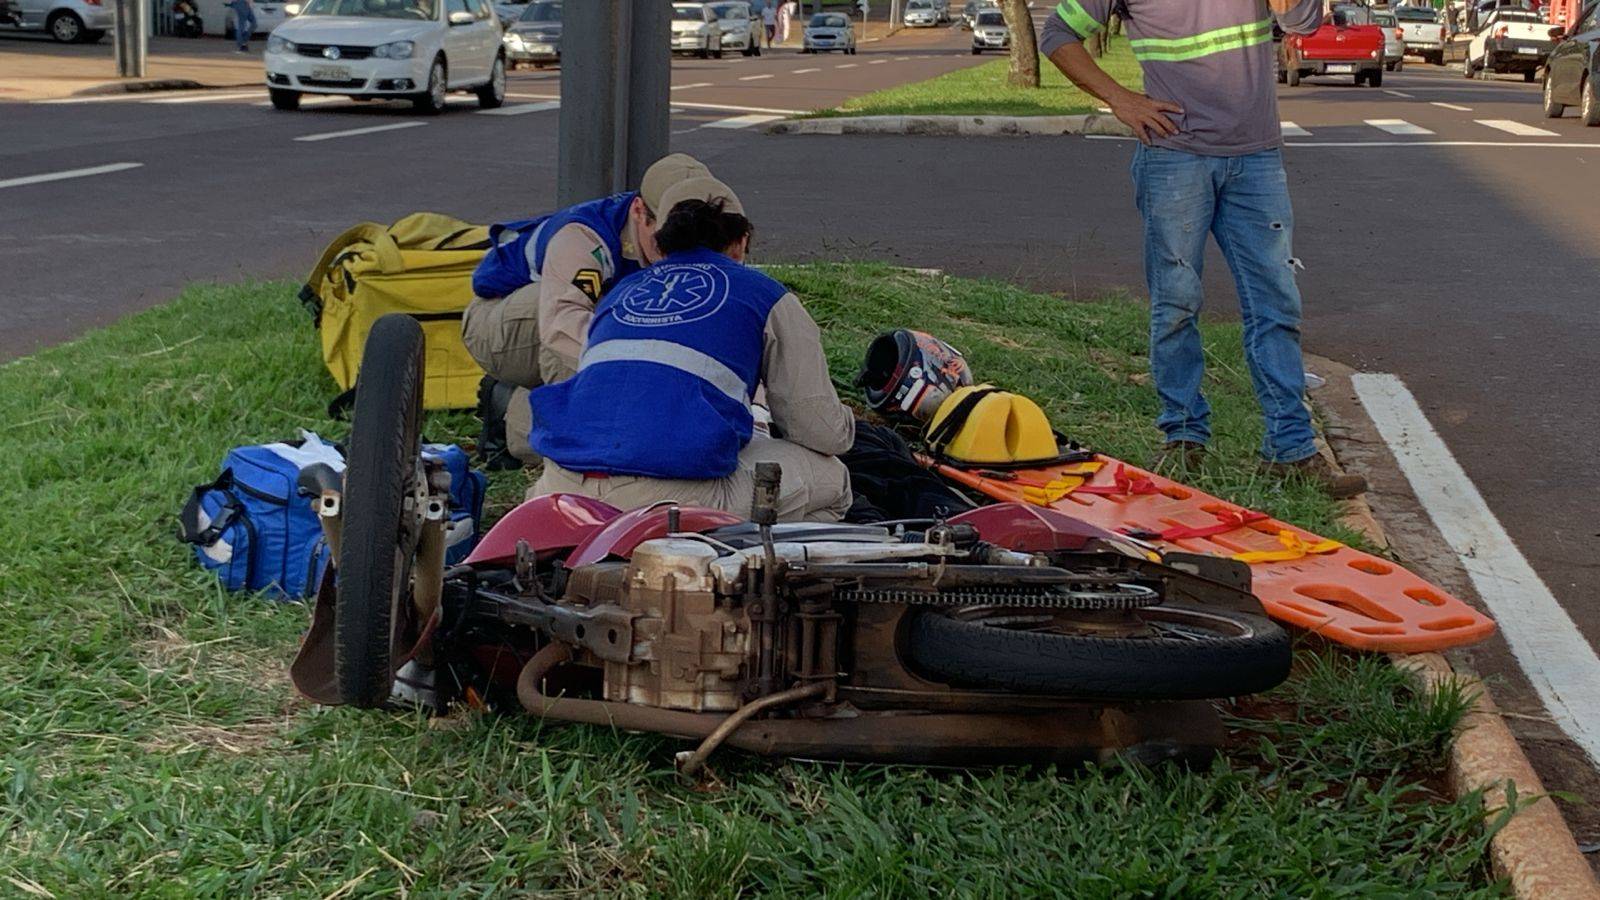 Motociclista sofre ferimentos em braço e mão após forte colisão na Avenida Rocha Pombo em Cascavel